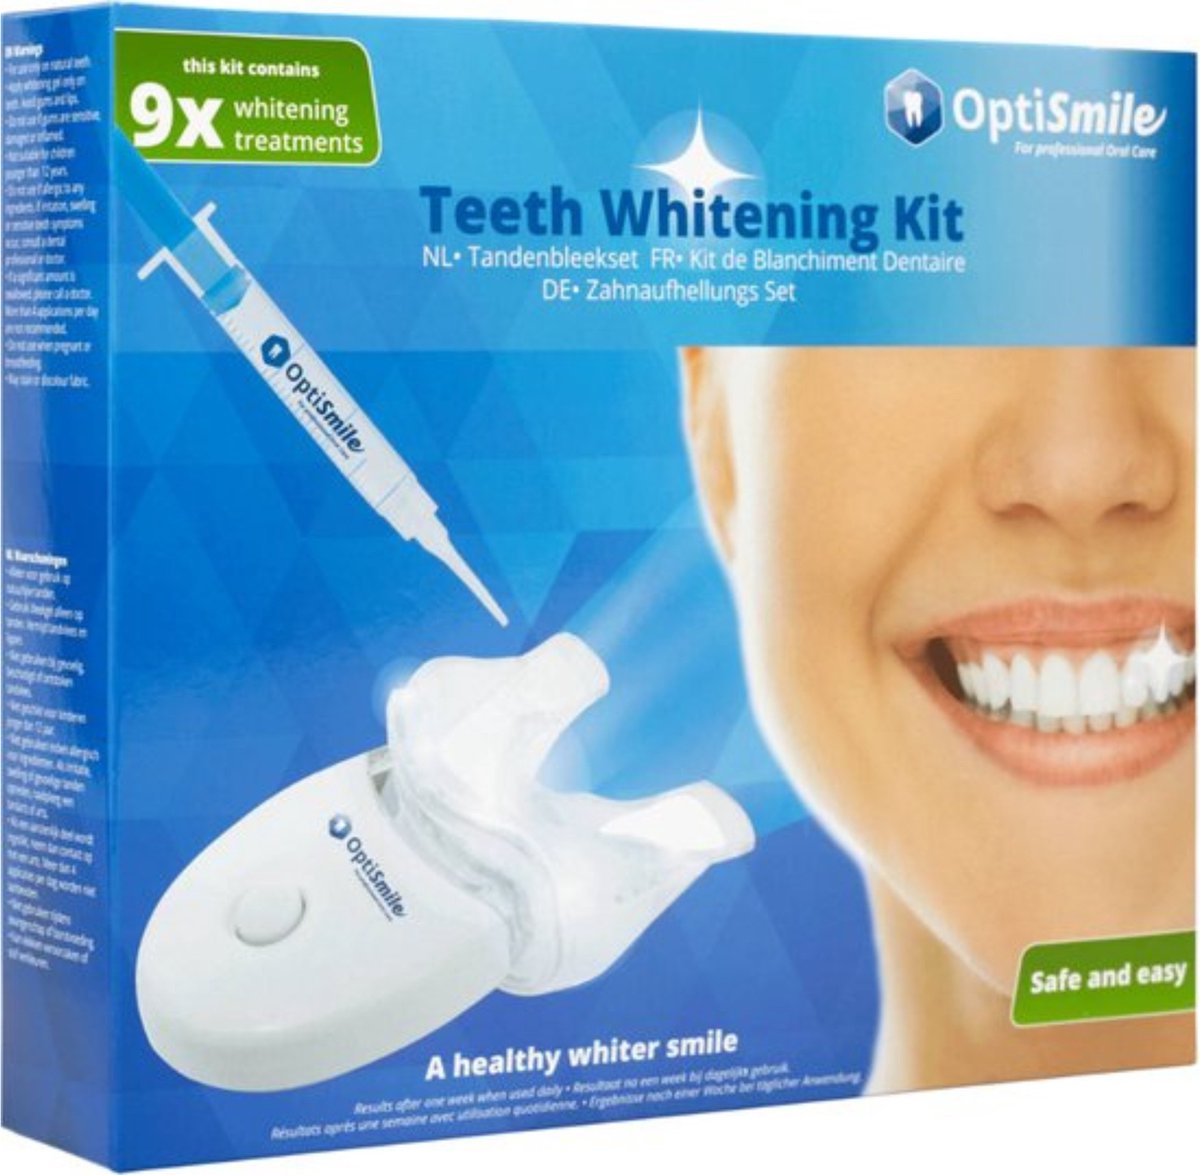 Tanden Bleken - Tandbleek Set - Tandenbleekset - Professionele Teeth Whitening - 100% veilig en makkelijk in gebruik - Black Friday Sint Kerst